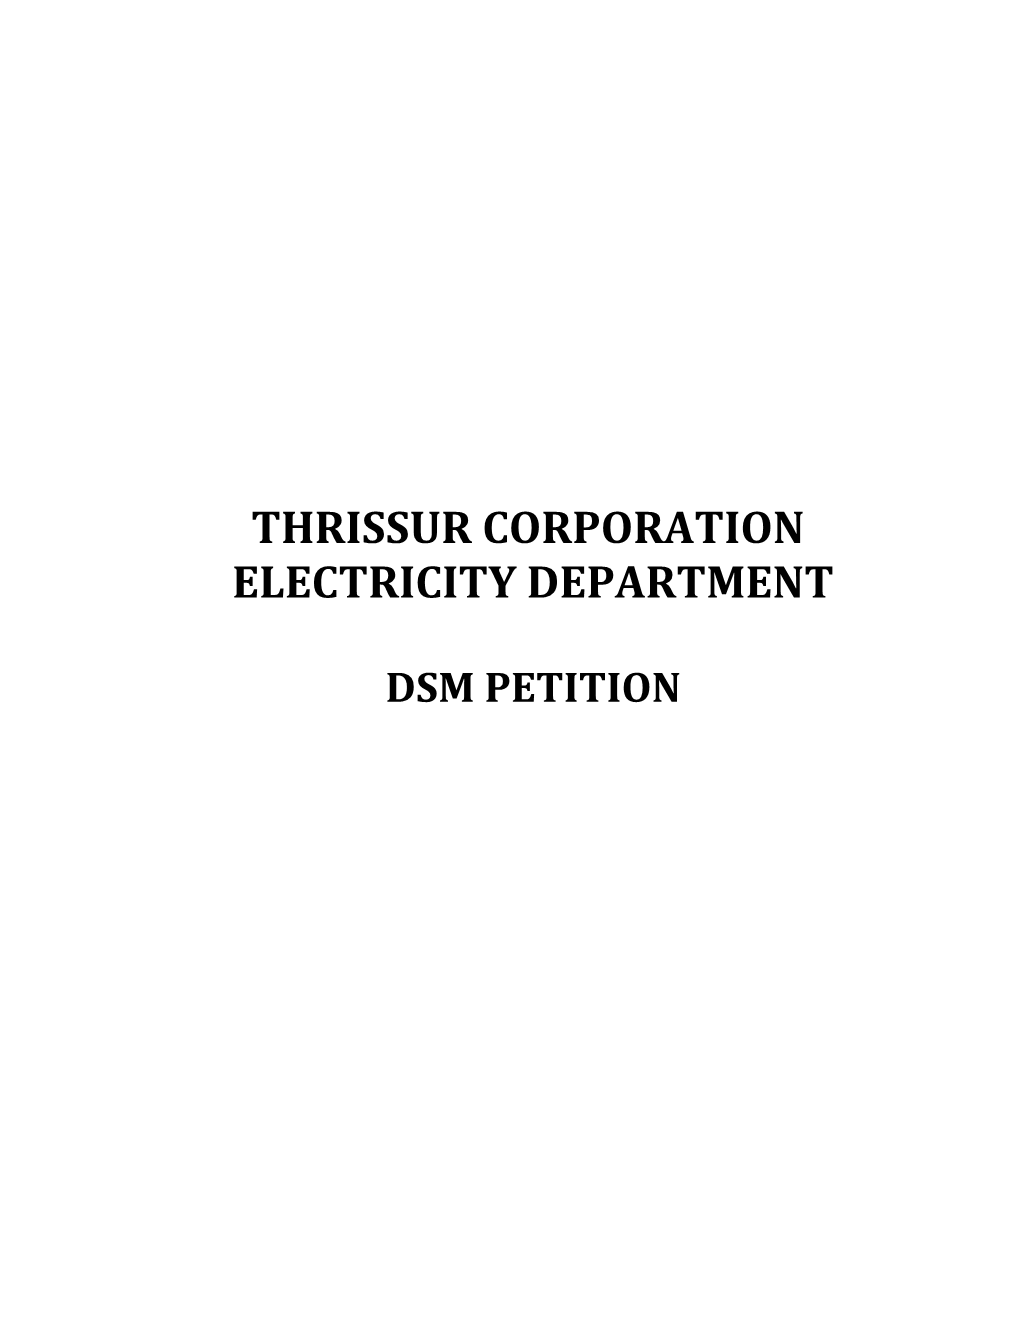 Thrissur Corporation